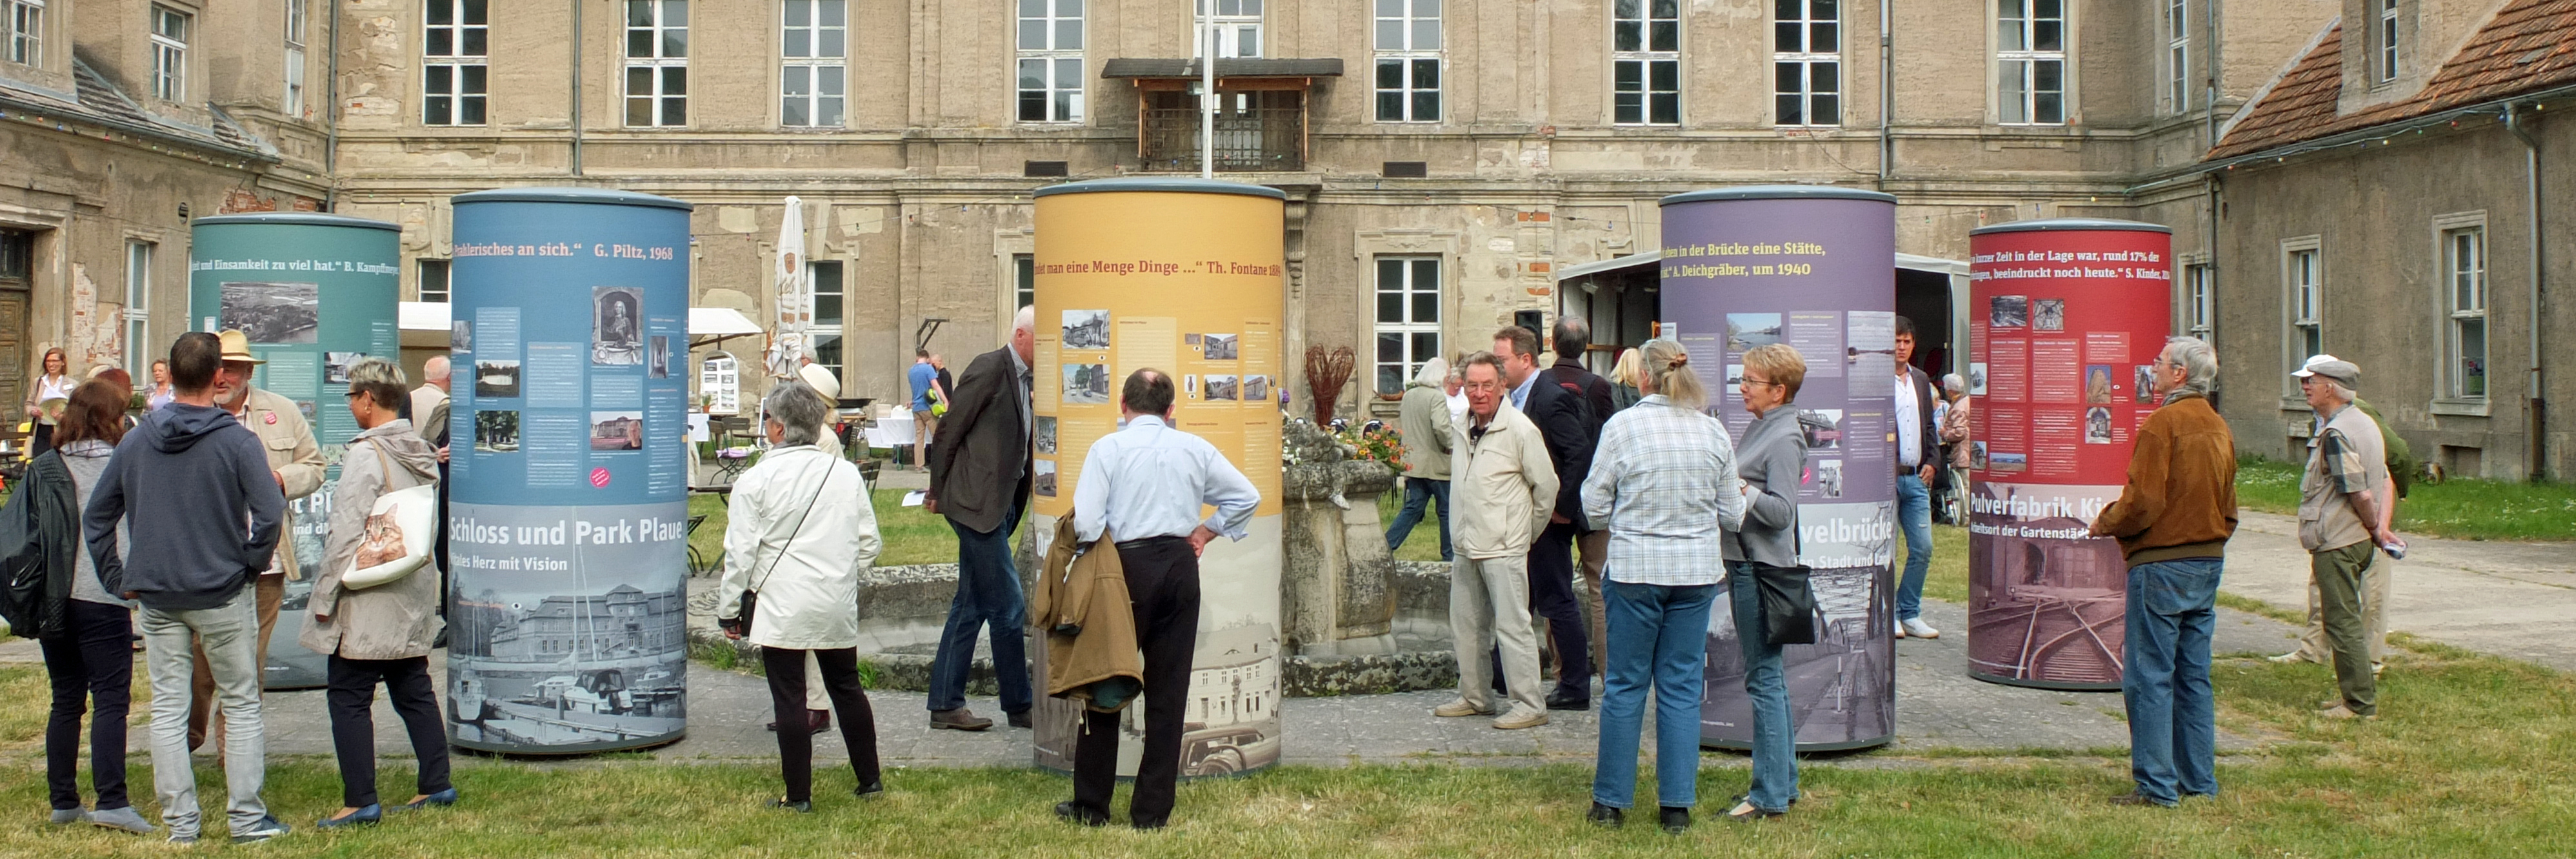 Vor dem Schloss Plaue wird eine Ausstellung eröffnet